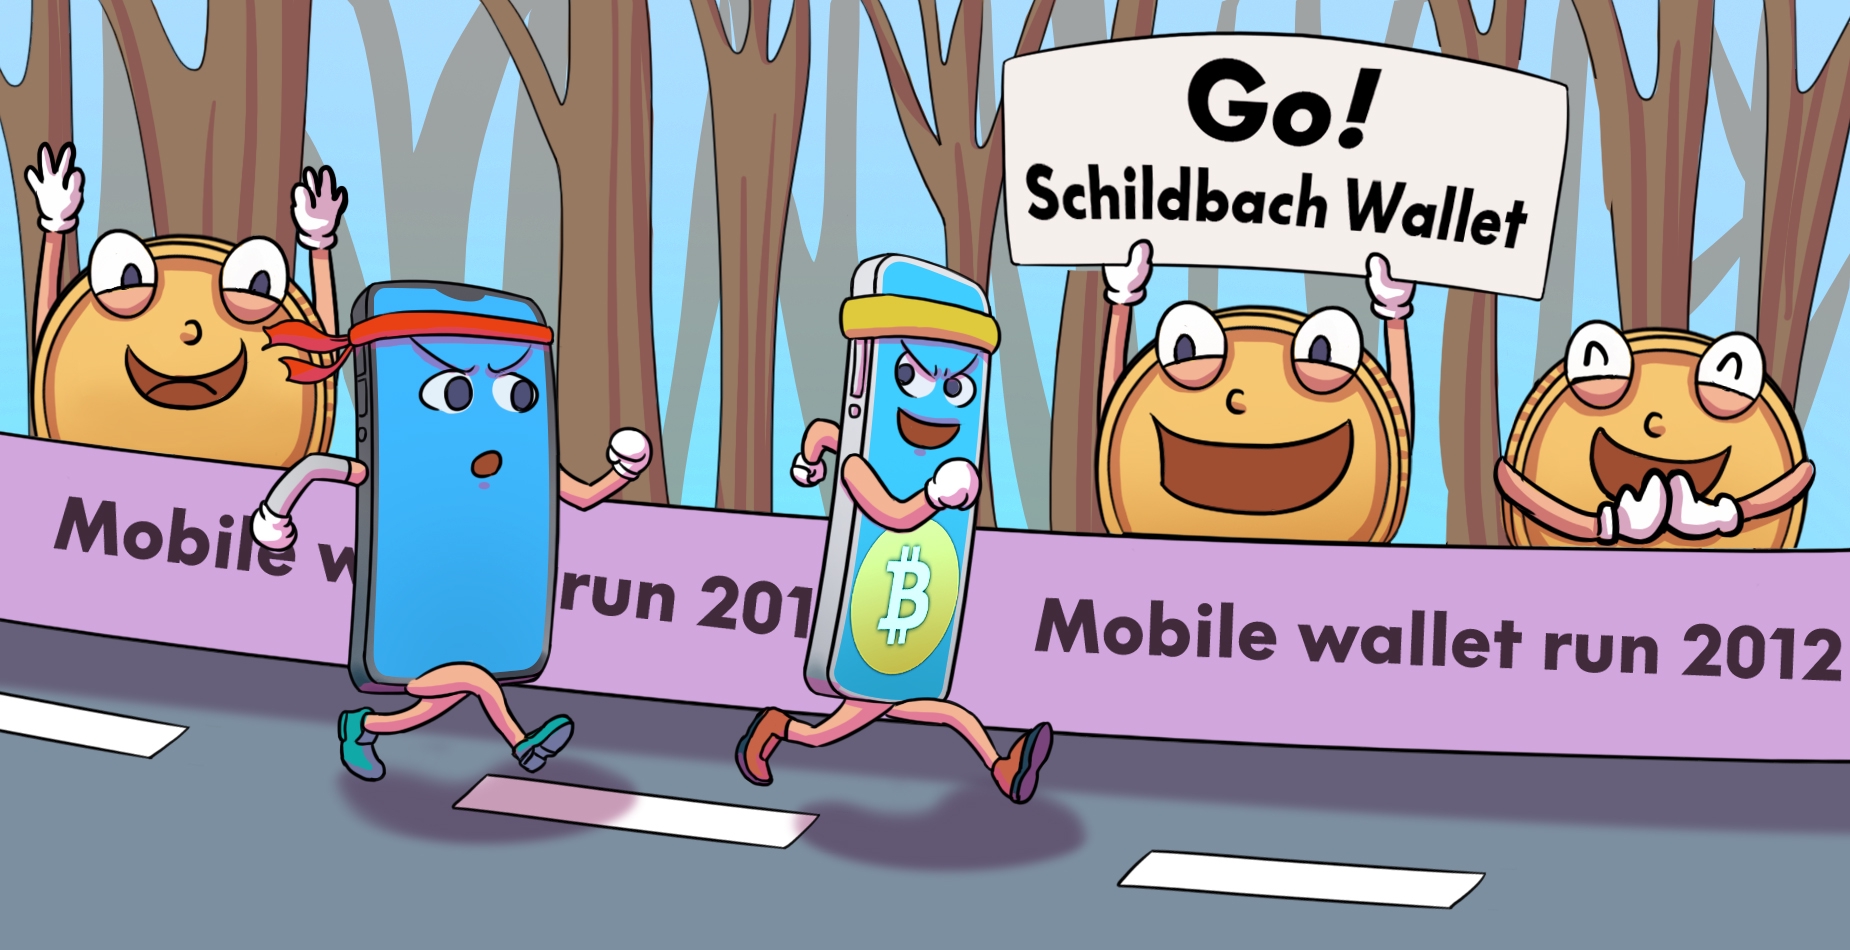 Zwei Smartphones laufen einen Marathon. Das mit dem Schildbach Logo läuft im ersten Platz und wir von Coins angefeuert.